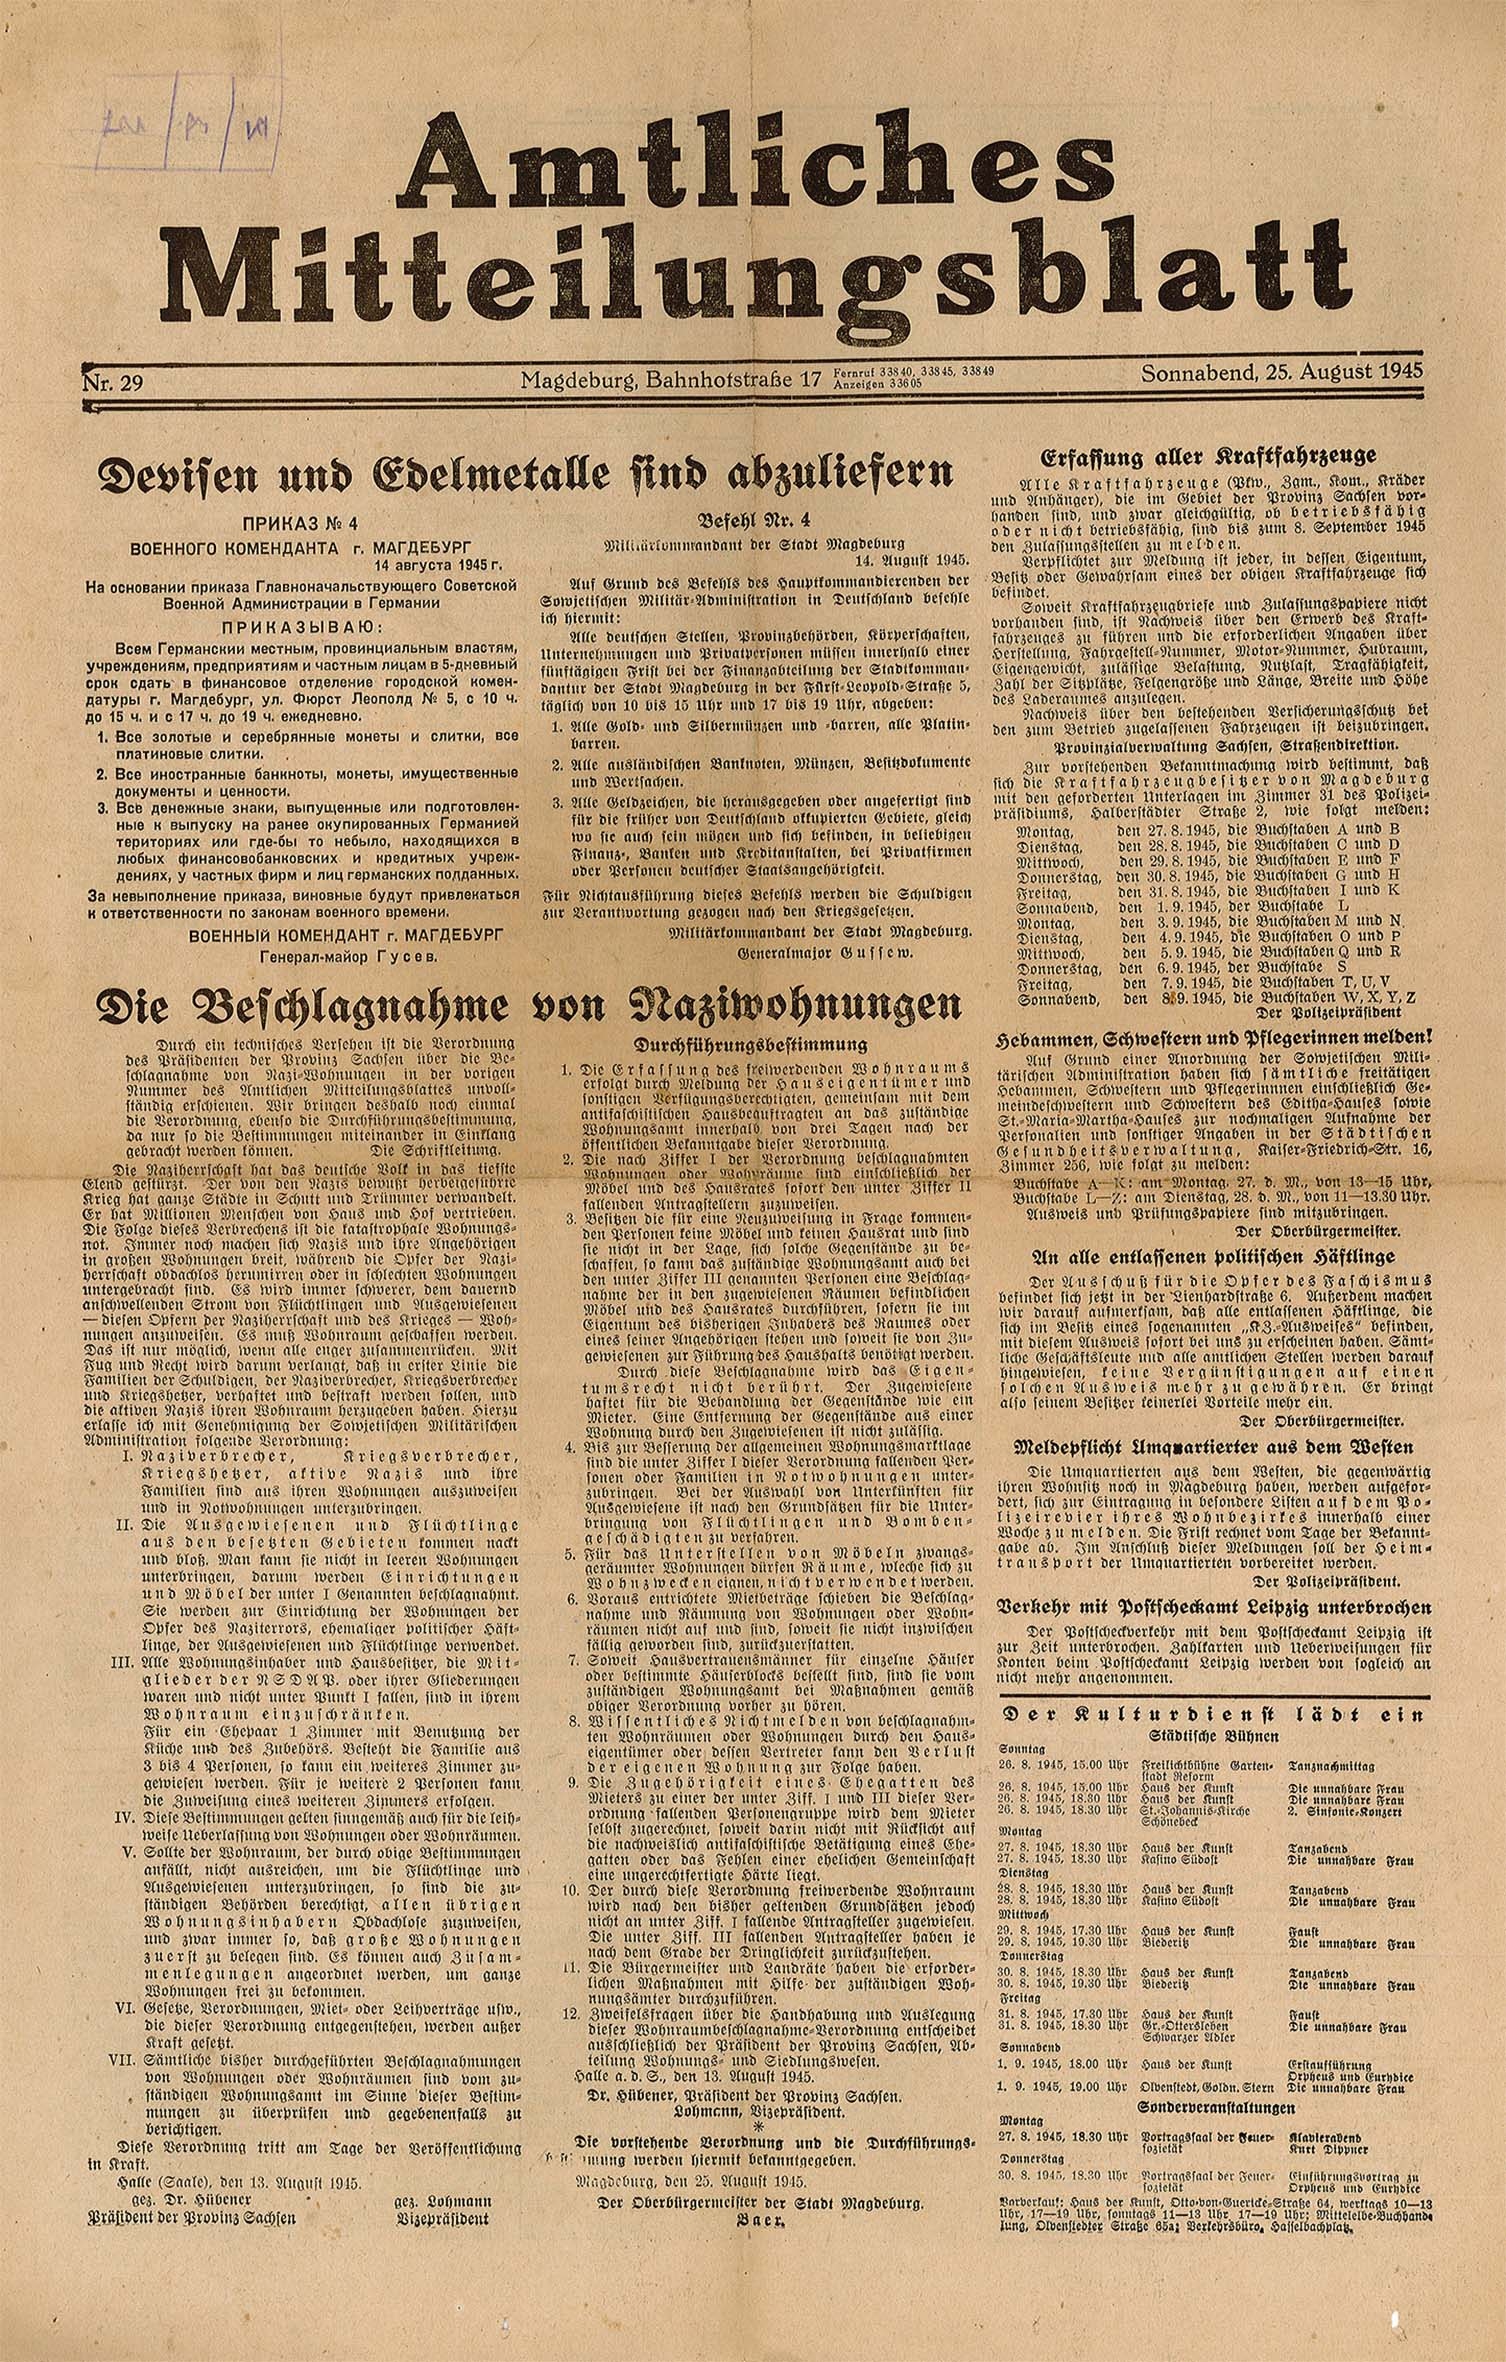 Amtliches Mitteilungsblatt Magdeburg, Nr. 29, 25. August 1945 (Museum Wolmirstedt RR-F)